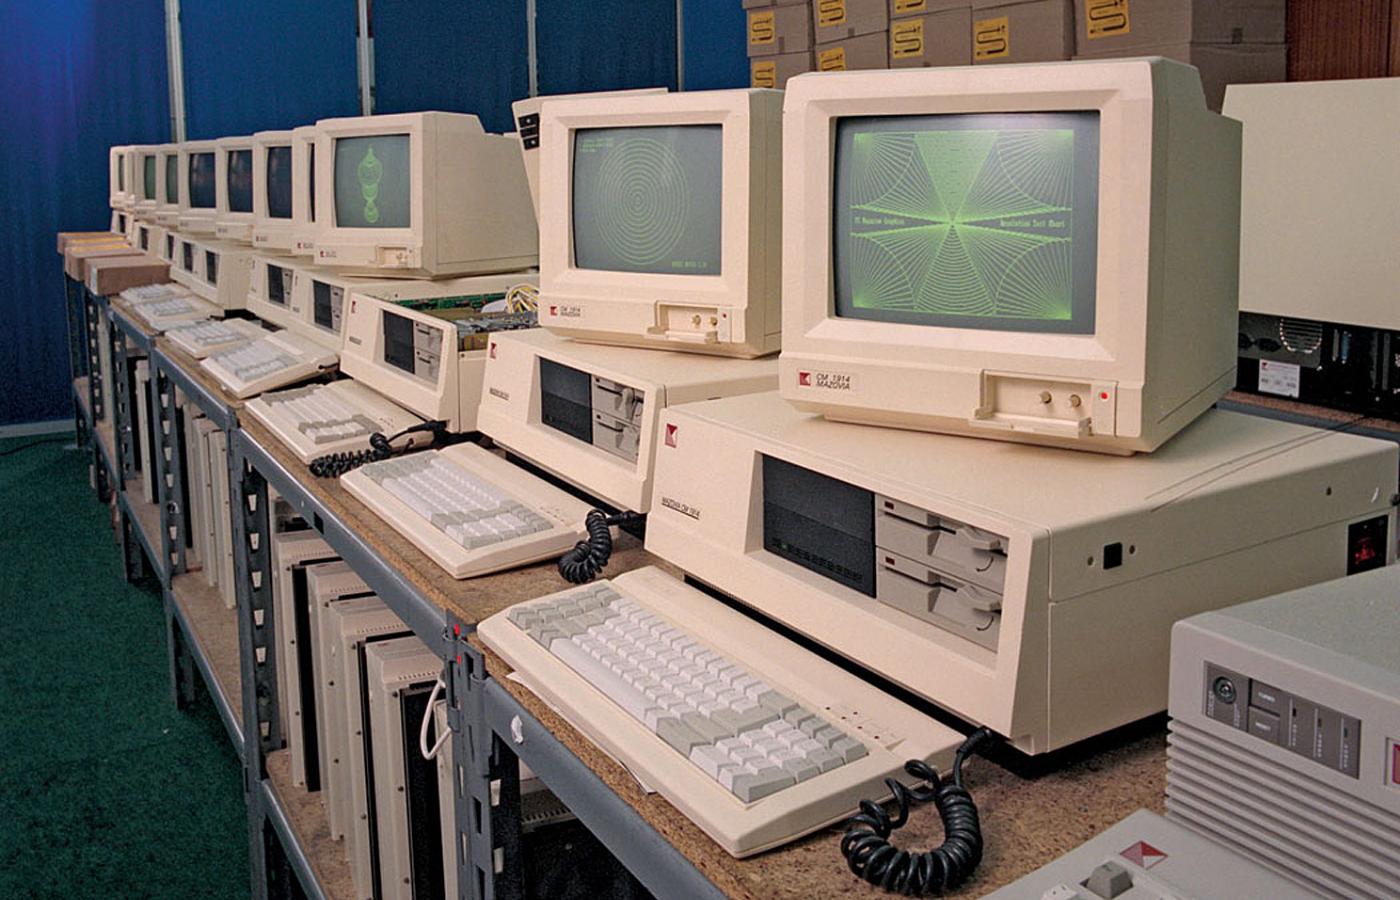 Komputery Mazovia produkowane w zakładach MERA w Błoniu, 1990 r.